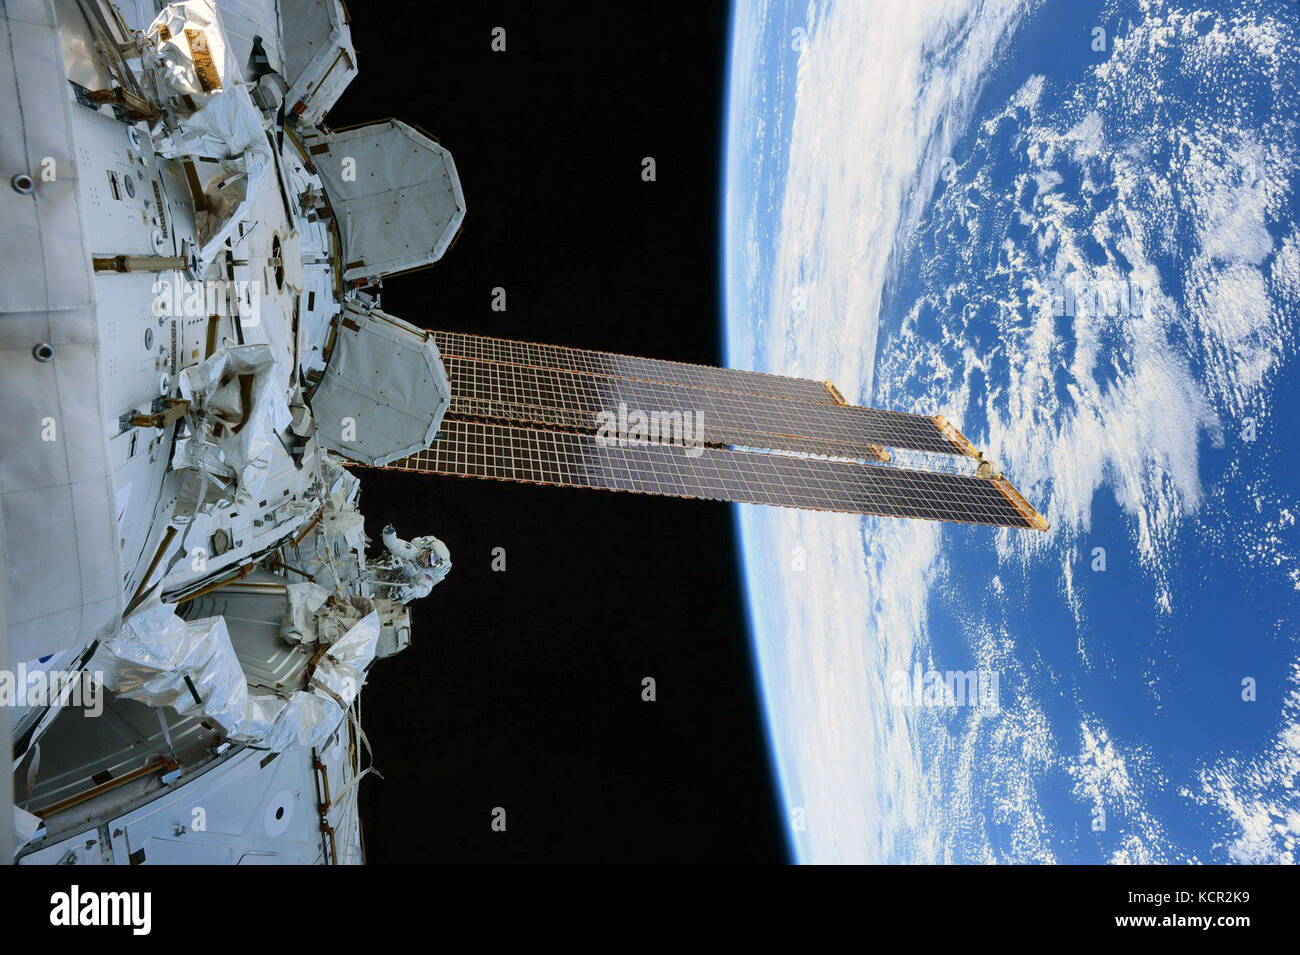 Internationale Raumstation ISS Expedition 53 Crew Mitglieder mark Vande hei und Randy Bresnik Arbeiten zur Installation einer neuen rastend endeffektor an der Spitze des Roboterarms Canadarm2 Oktober 6, 2017 im Erdorbit. Die beiden Astronauten für 6 Stunden, 55 Minuten das Teil während der ersten Weltraumspaziergang ihrer Expedition zu ersetzen. Credit: planetpix/alamy leben Nachrichten Stockfoto